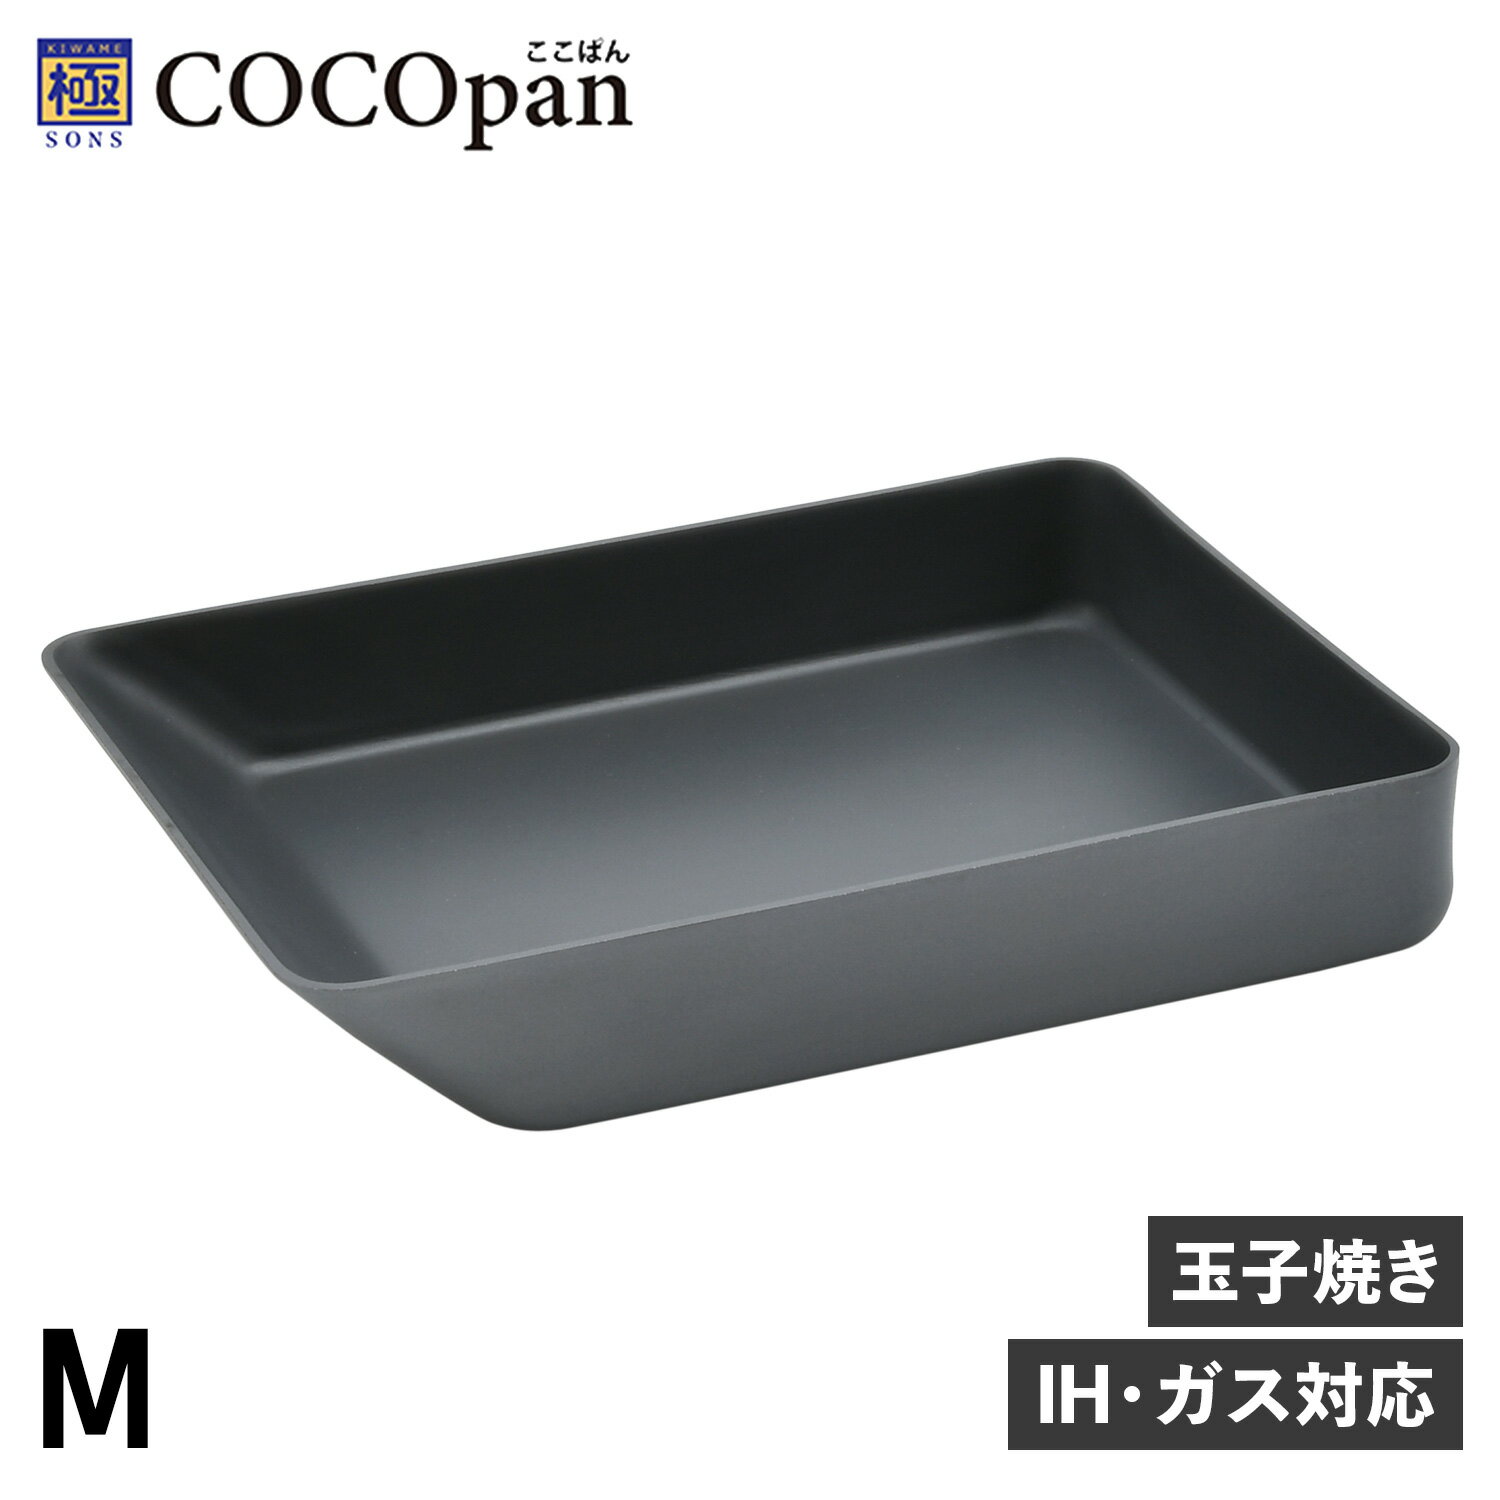 COCOpan 極SONS ココパン 卵焼き器 フライパン グリル Mサイズ IH ガス対応 鉄 リバーライト C106-002 アウトドア